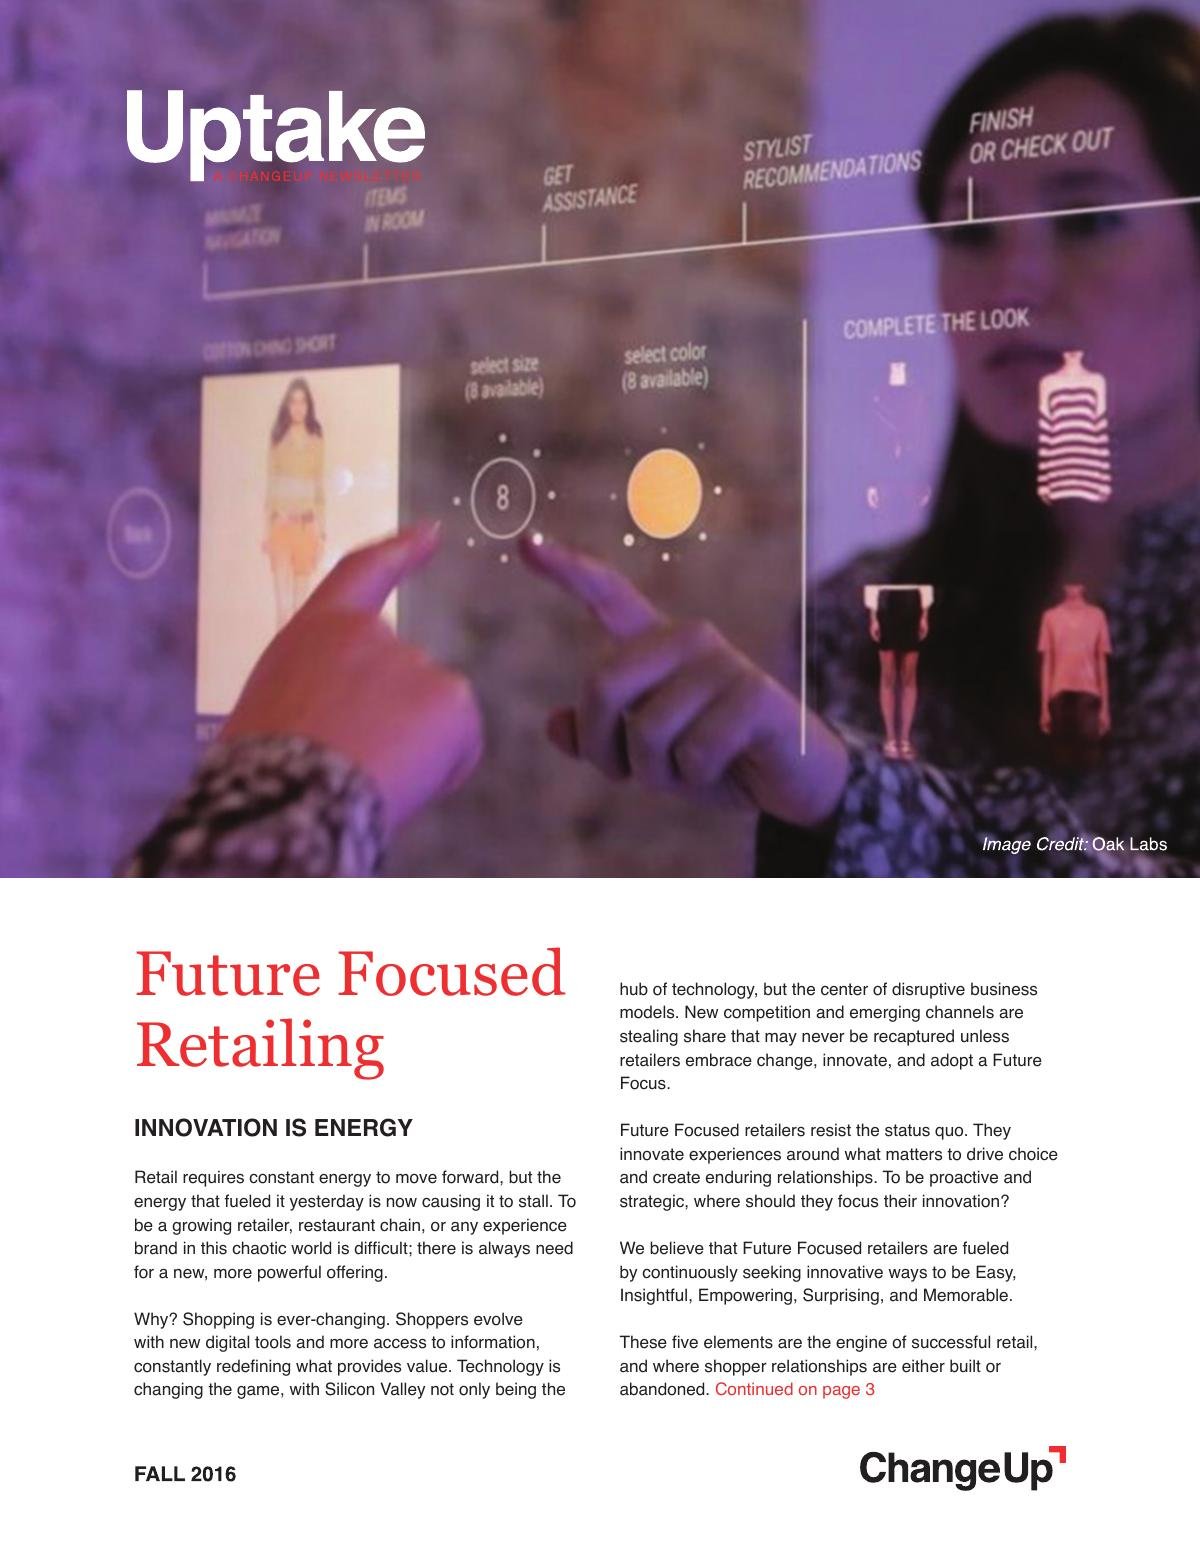 Future Focused Retailing